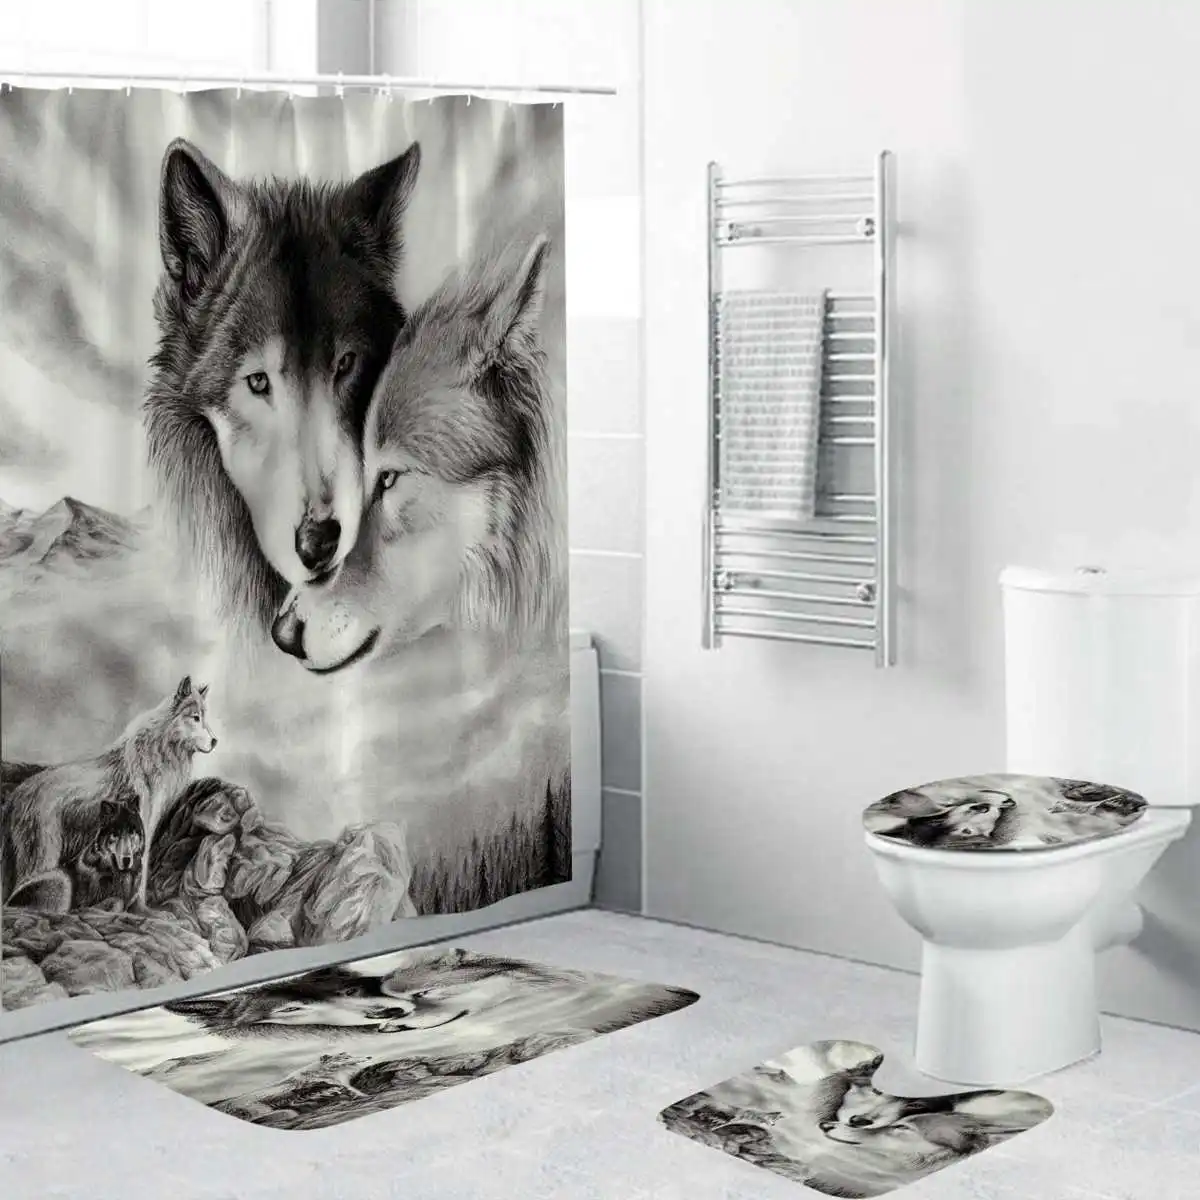 180x180 см Белый Волк Ловец снов глаза волка с 12 крючками занавеска для ванной комнаты коврик для туалета крышка ковер 1 шт./3 шт./4 шт. набор штор - Цвет: 2 Wolves 4Pcs